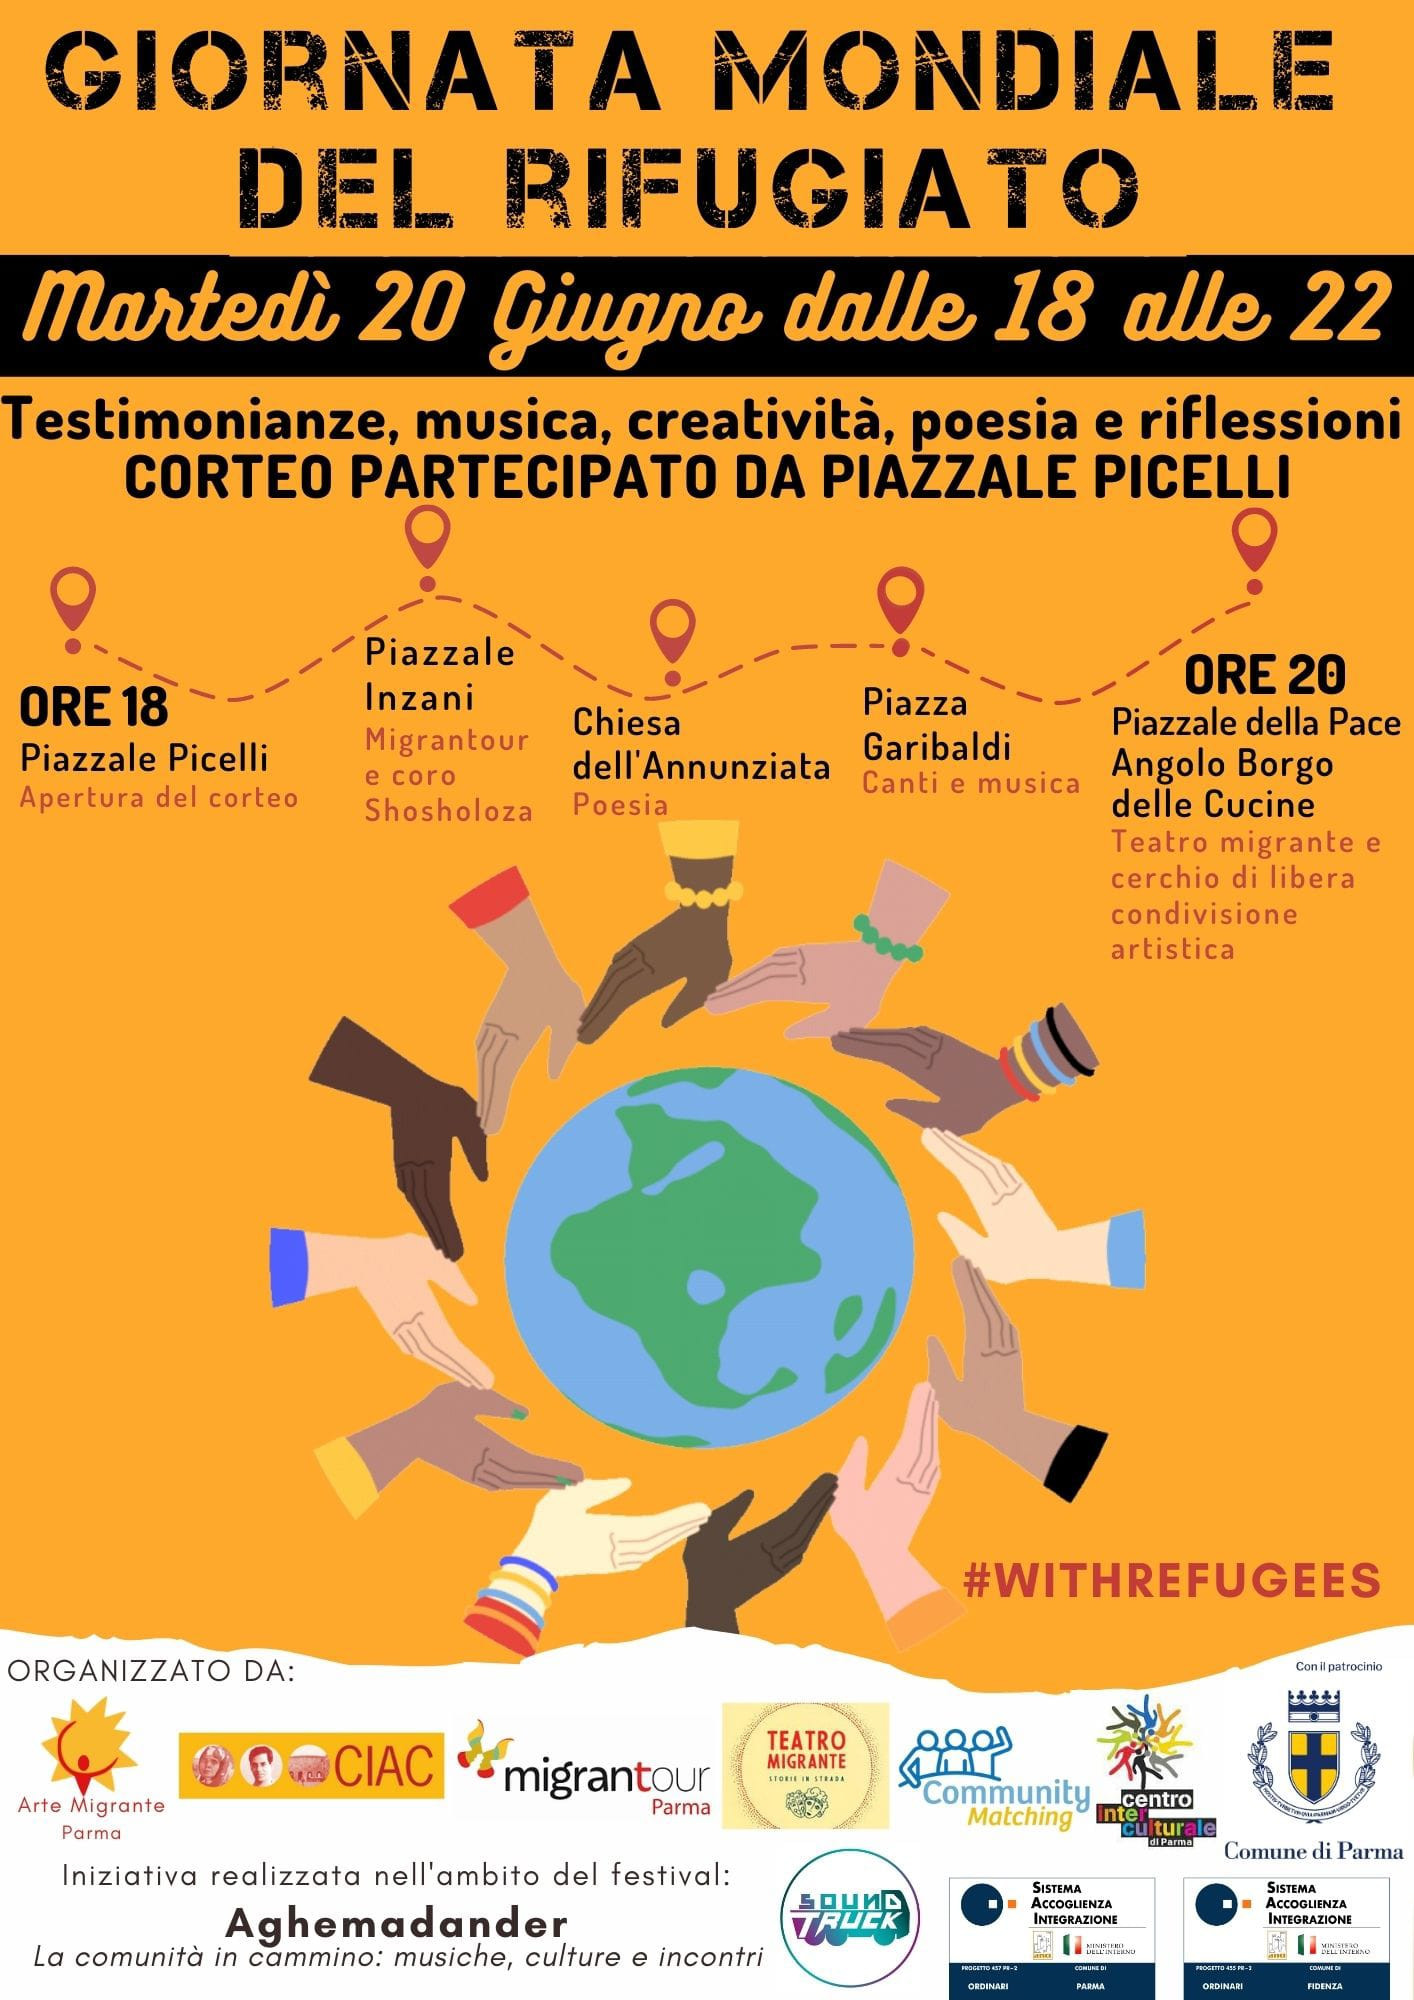 Giornata mondiale del rifugiato: il 20 giugno corteo partecipato